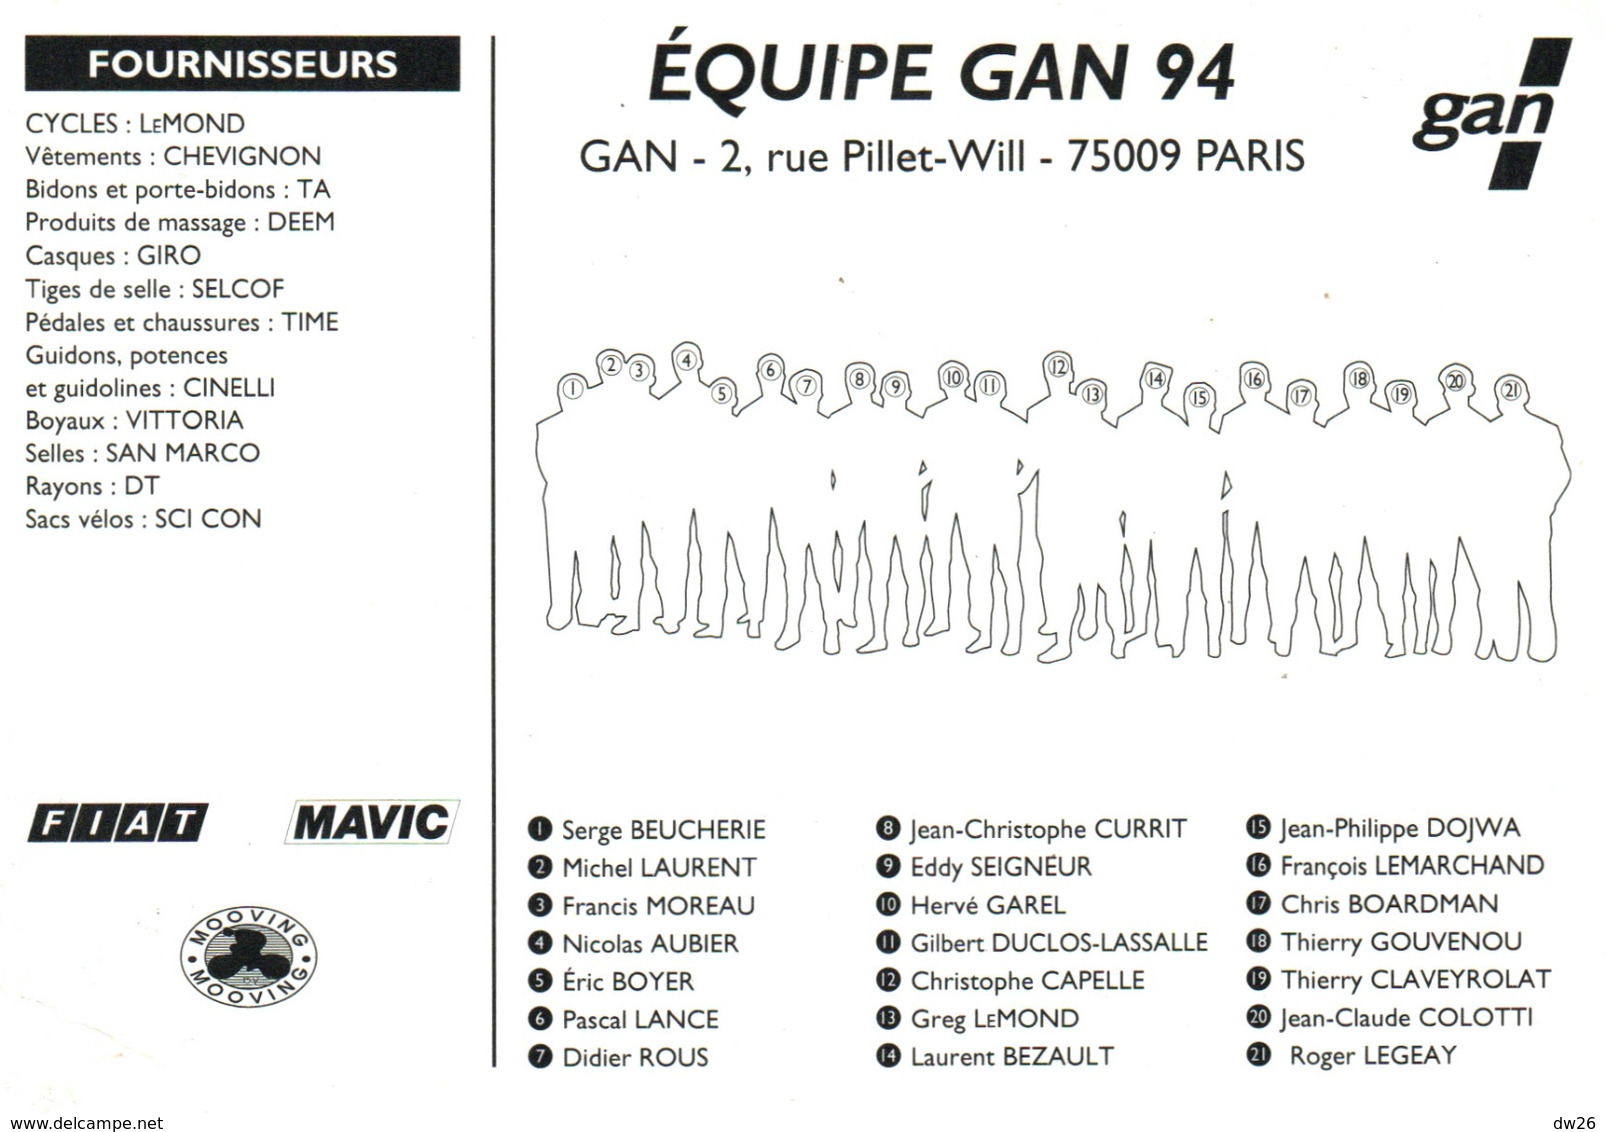 Cyclisme - Allez L'Equipe Gan 94, Photo De Groupe - Publicité FIAT, MAVIC, Cycles Lemond - Deportes